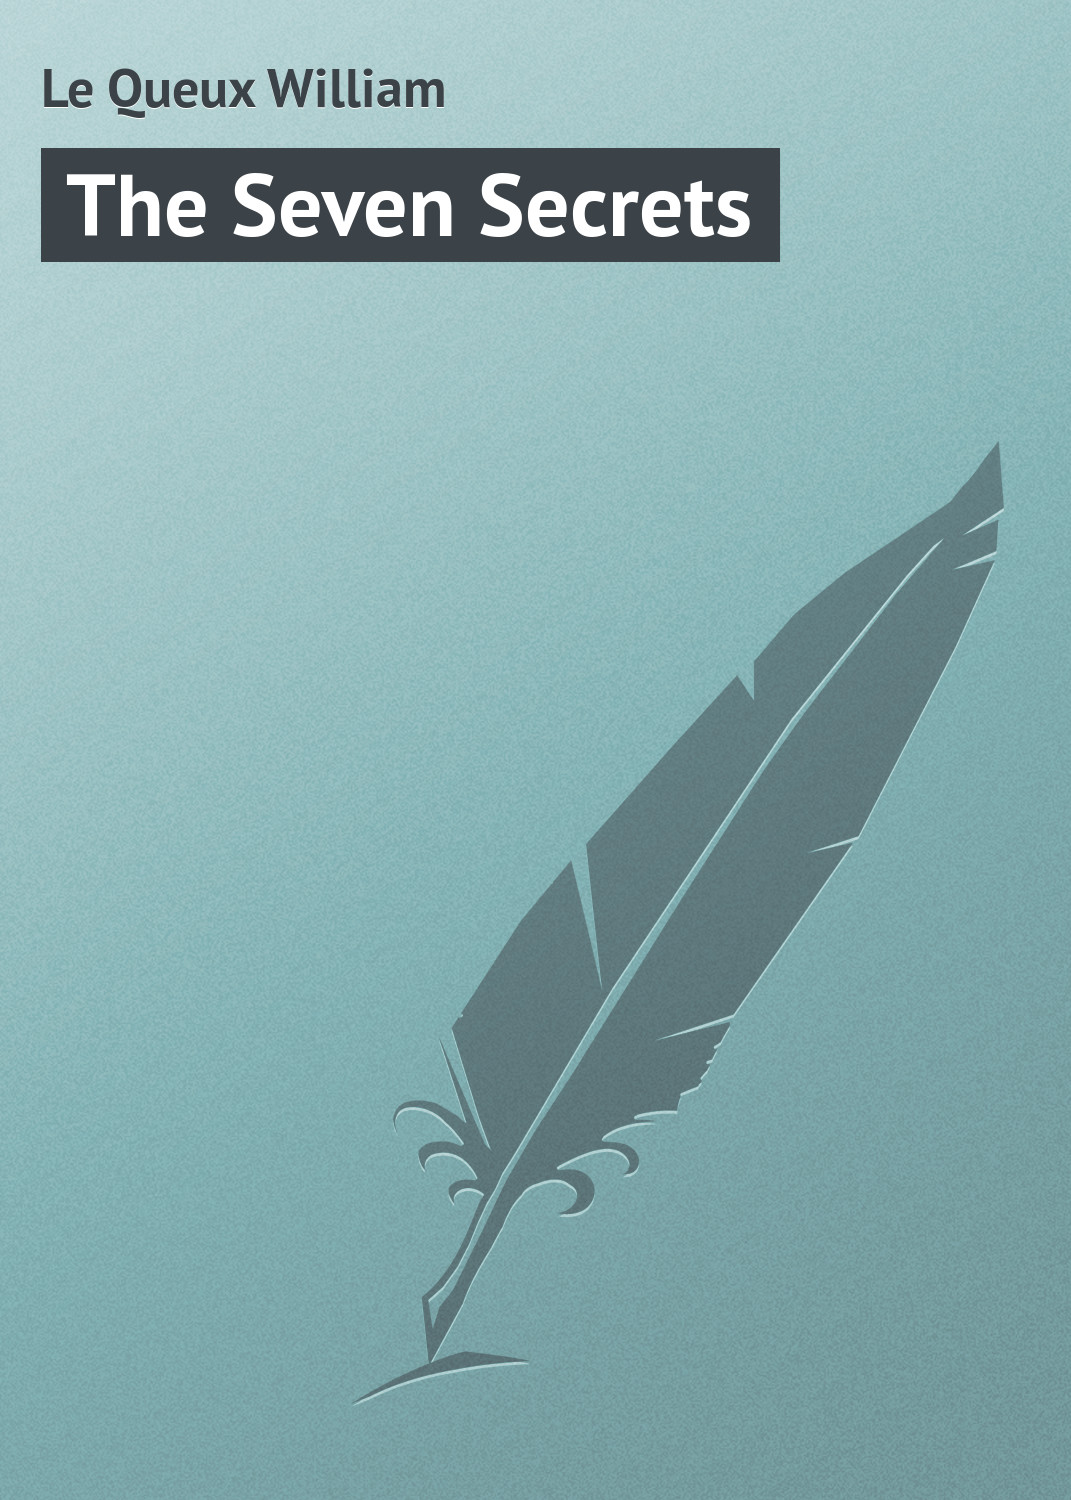 Книга The Seven Secrets из серии , созданная William Le Queux, может относится к жанру Иностранные языки, Зарубежная классика. Стоимость электронной книги The Seven Secrets с идентификатором 23159035 составляет 5.99 руб.